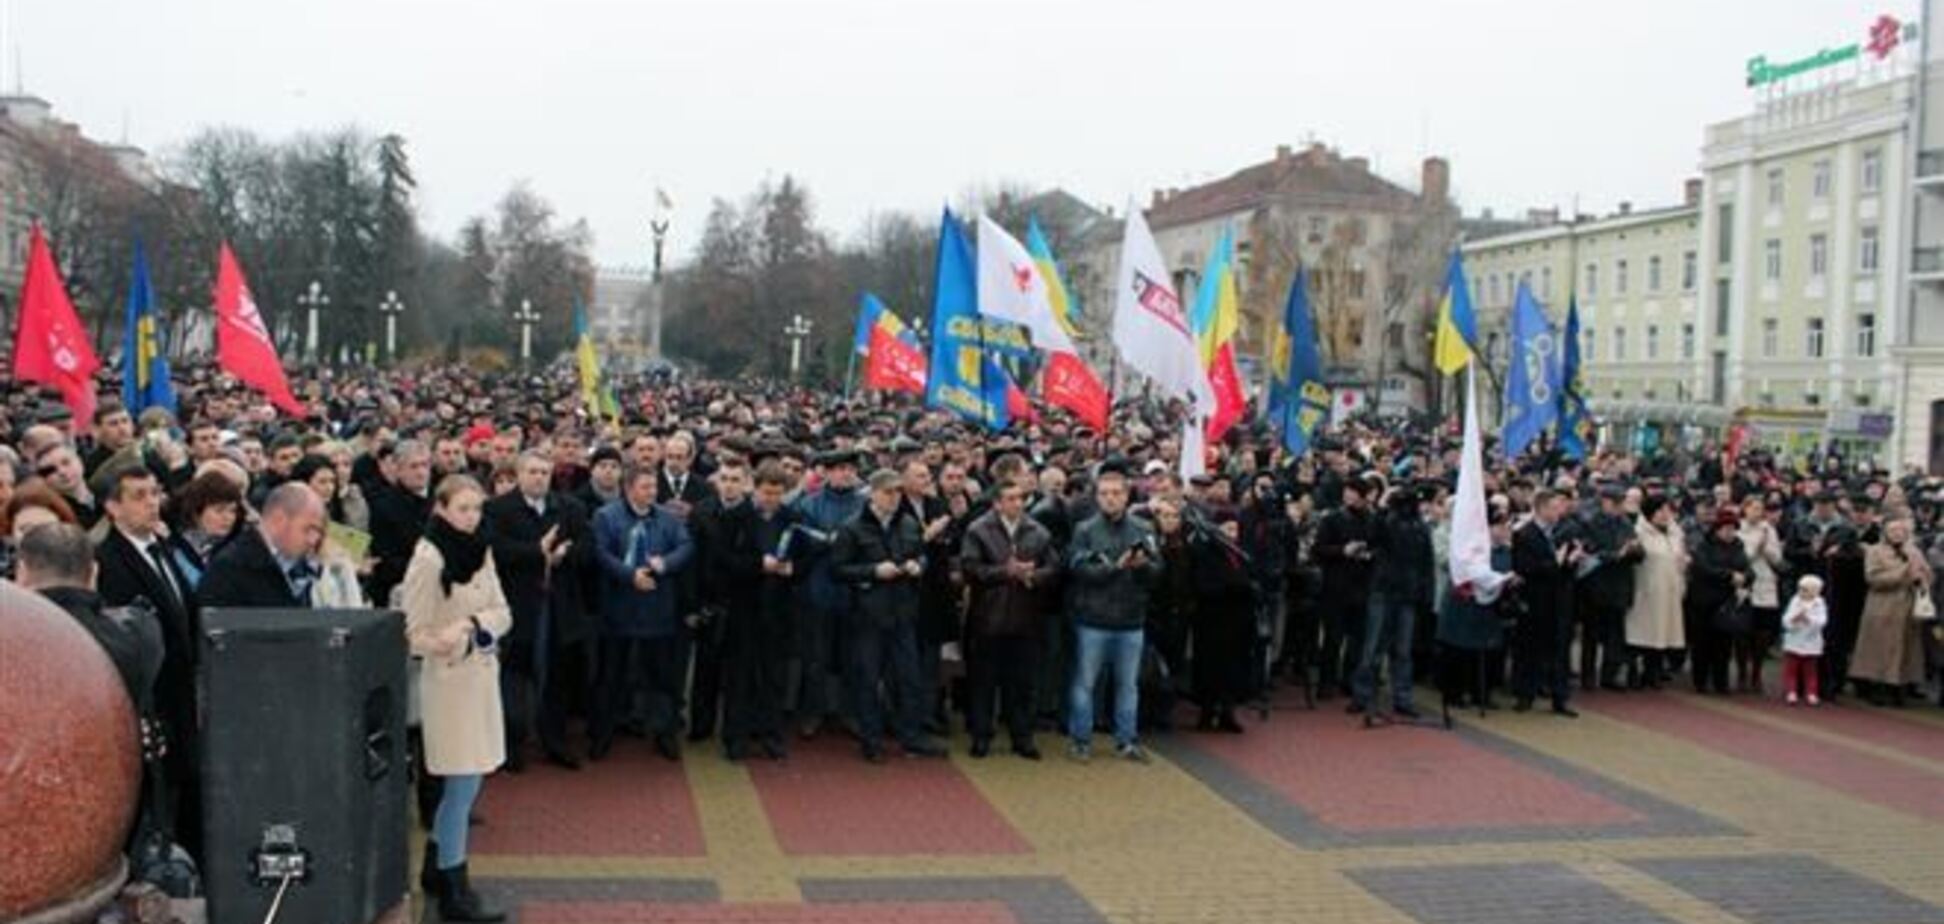 Тернопіль оголосив у понеділок загальноміську страйк